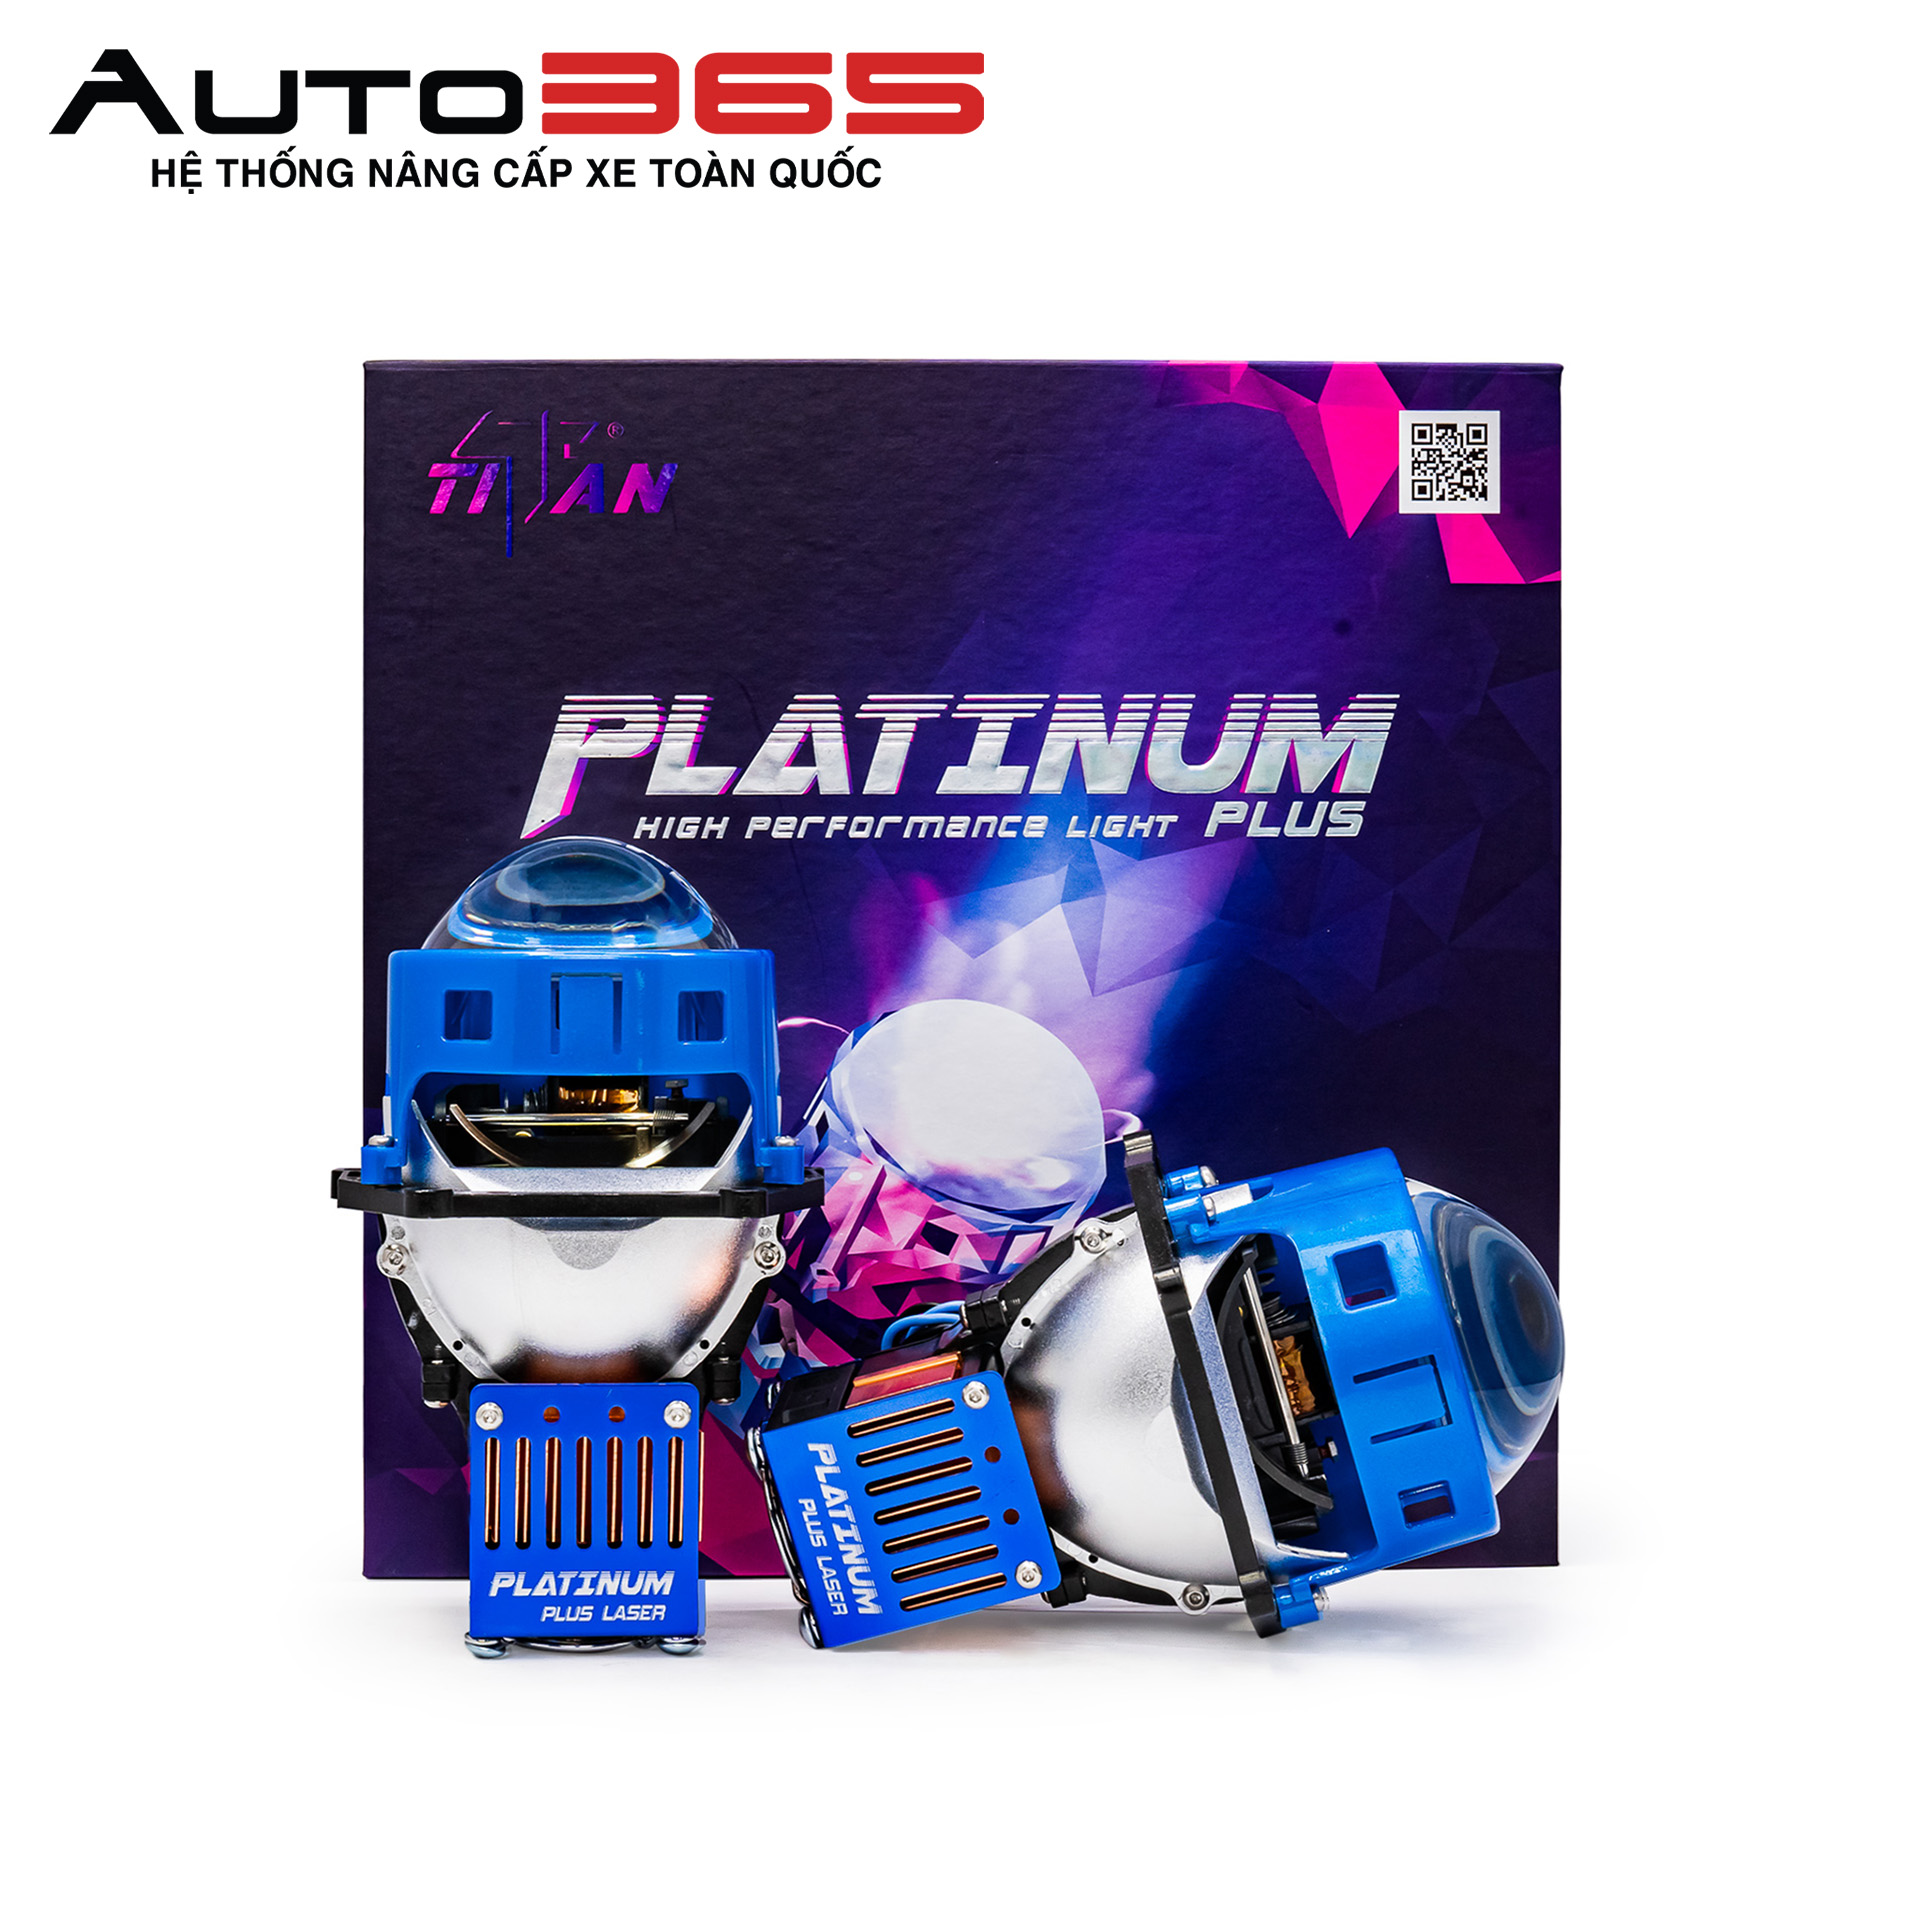 Laser Titan Platinum Plus đang là sản phẩm có mức giá khá cao trên thị trường